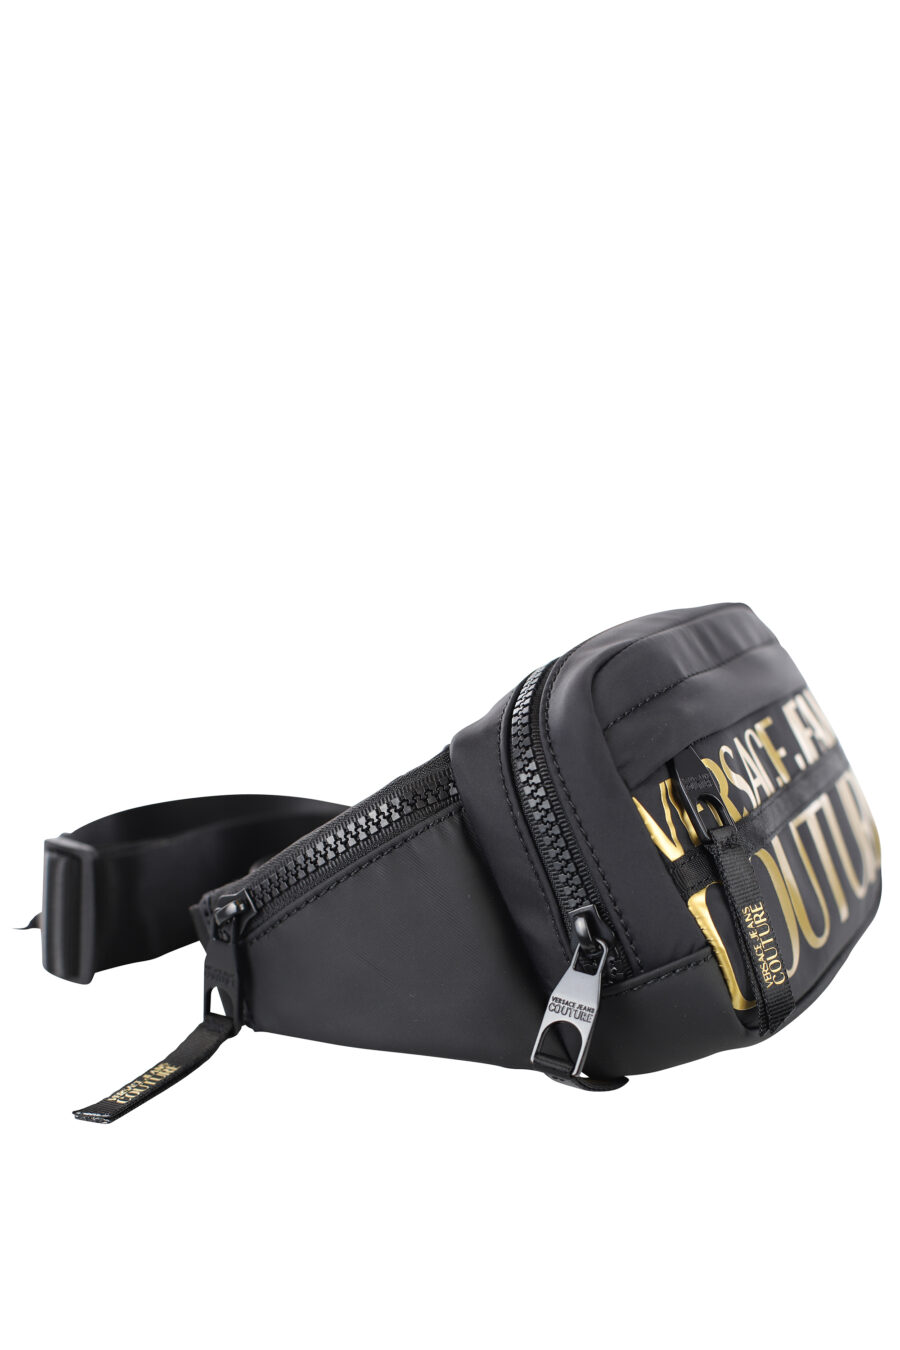 Black midi bum bag with gold maxilogo - IMG 7211